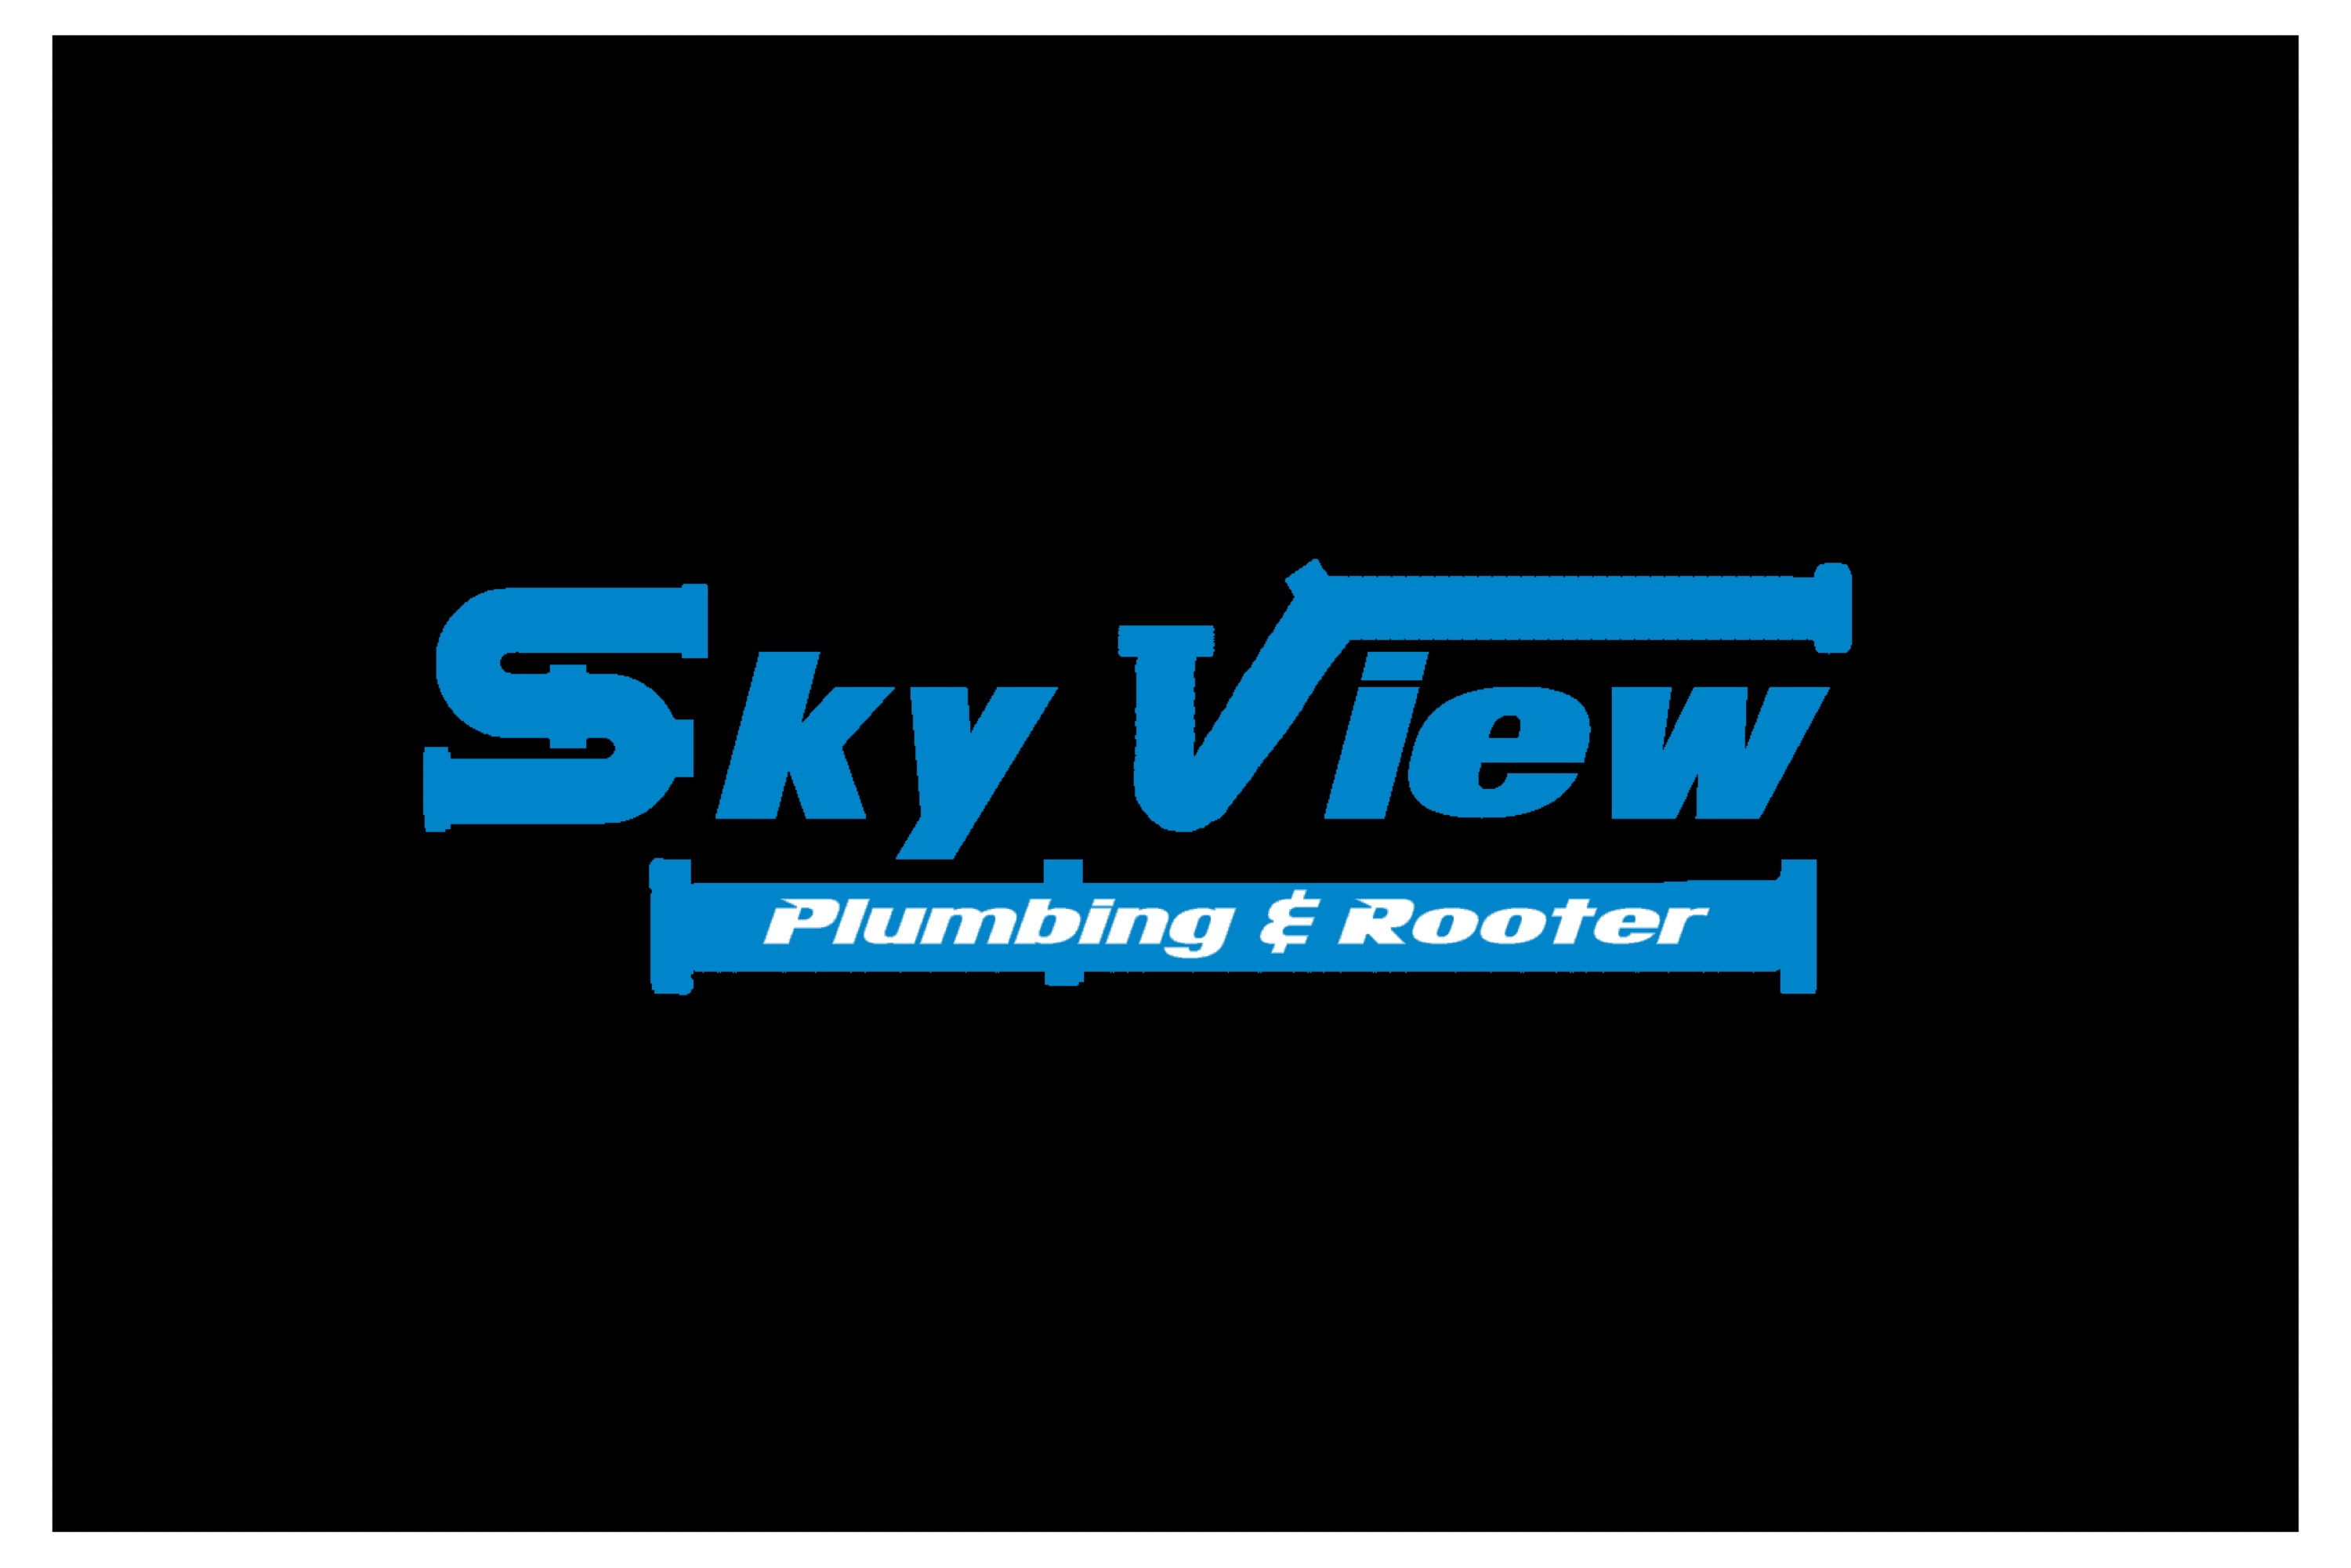 Skyview Plumbing & Rooter Logo